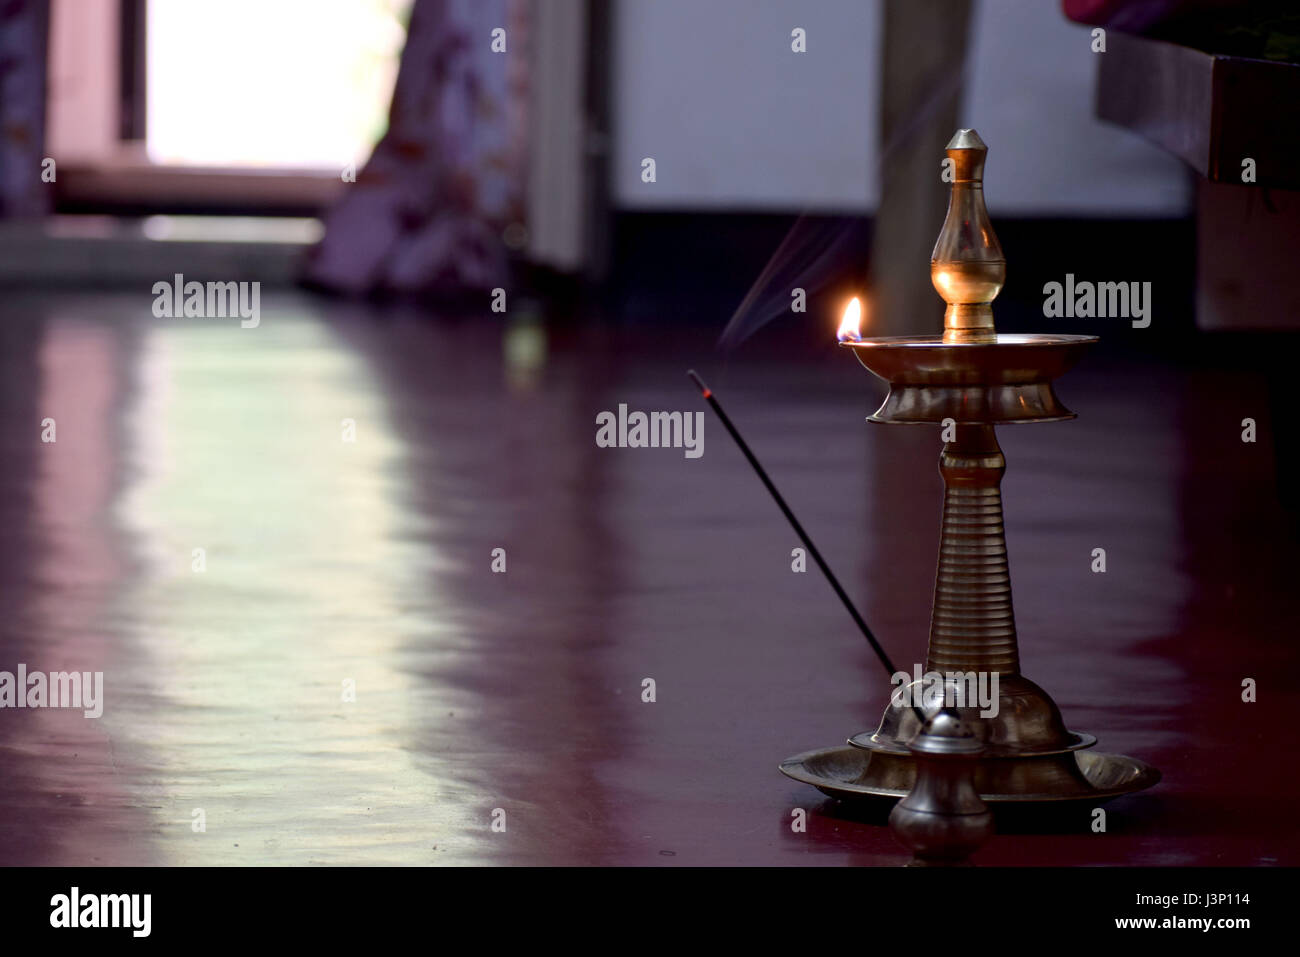 La gente en la India se utiliza para iluminar la lámpara cada día por la mañana y por la tarde en la devoción a Dios Foto de stock